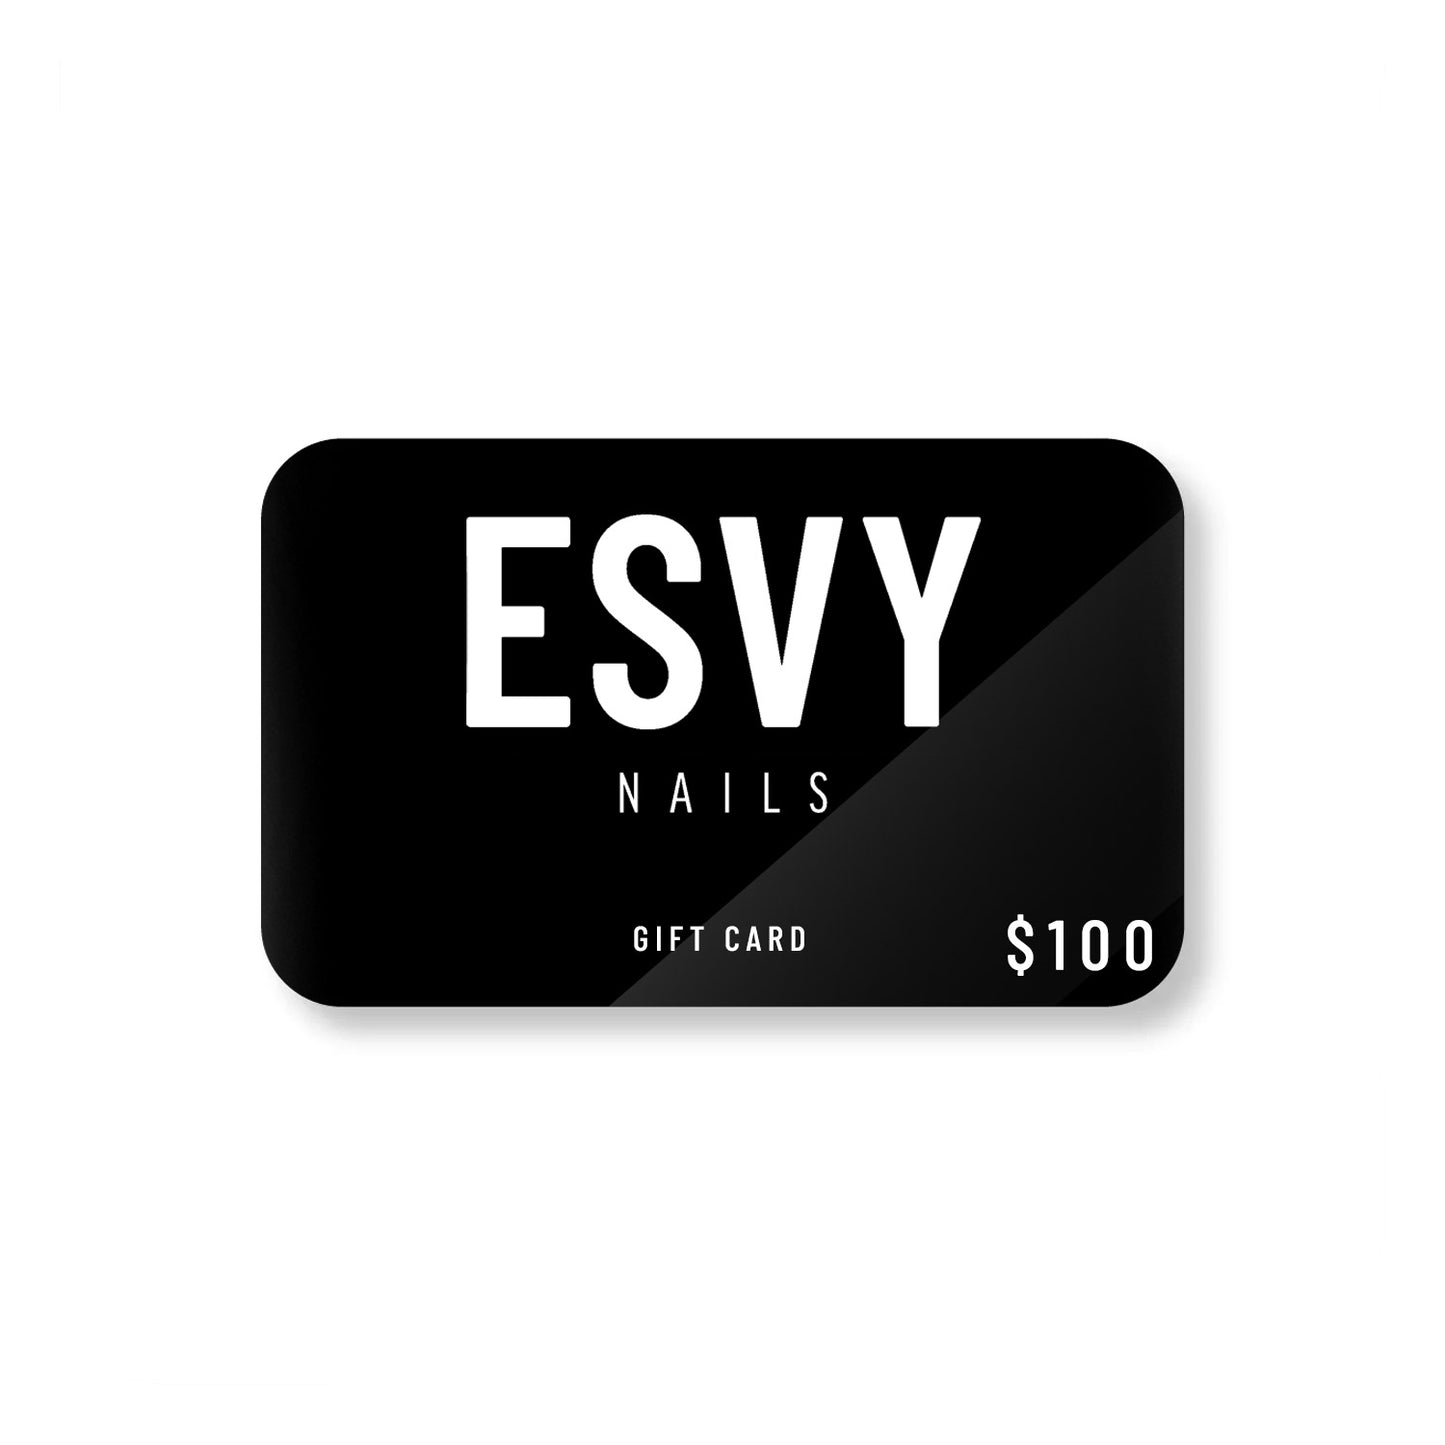 $100 ESVY Nails Gift Card